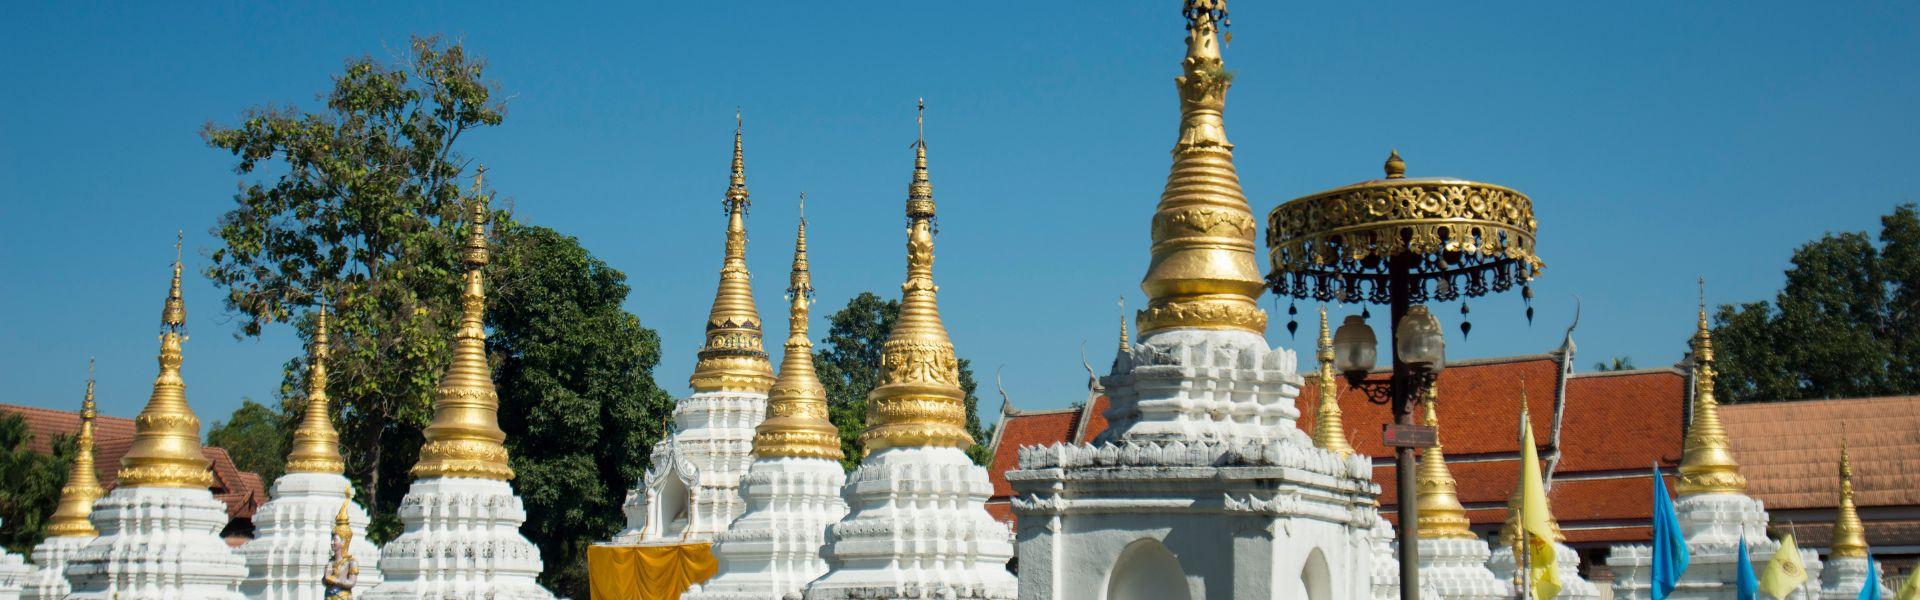 Guide de voyage de Lampang | Voyage en Thaïlande avec Asiatica Travel